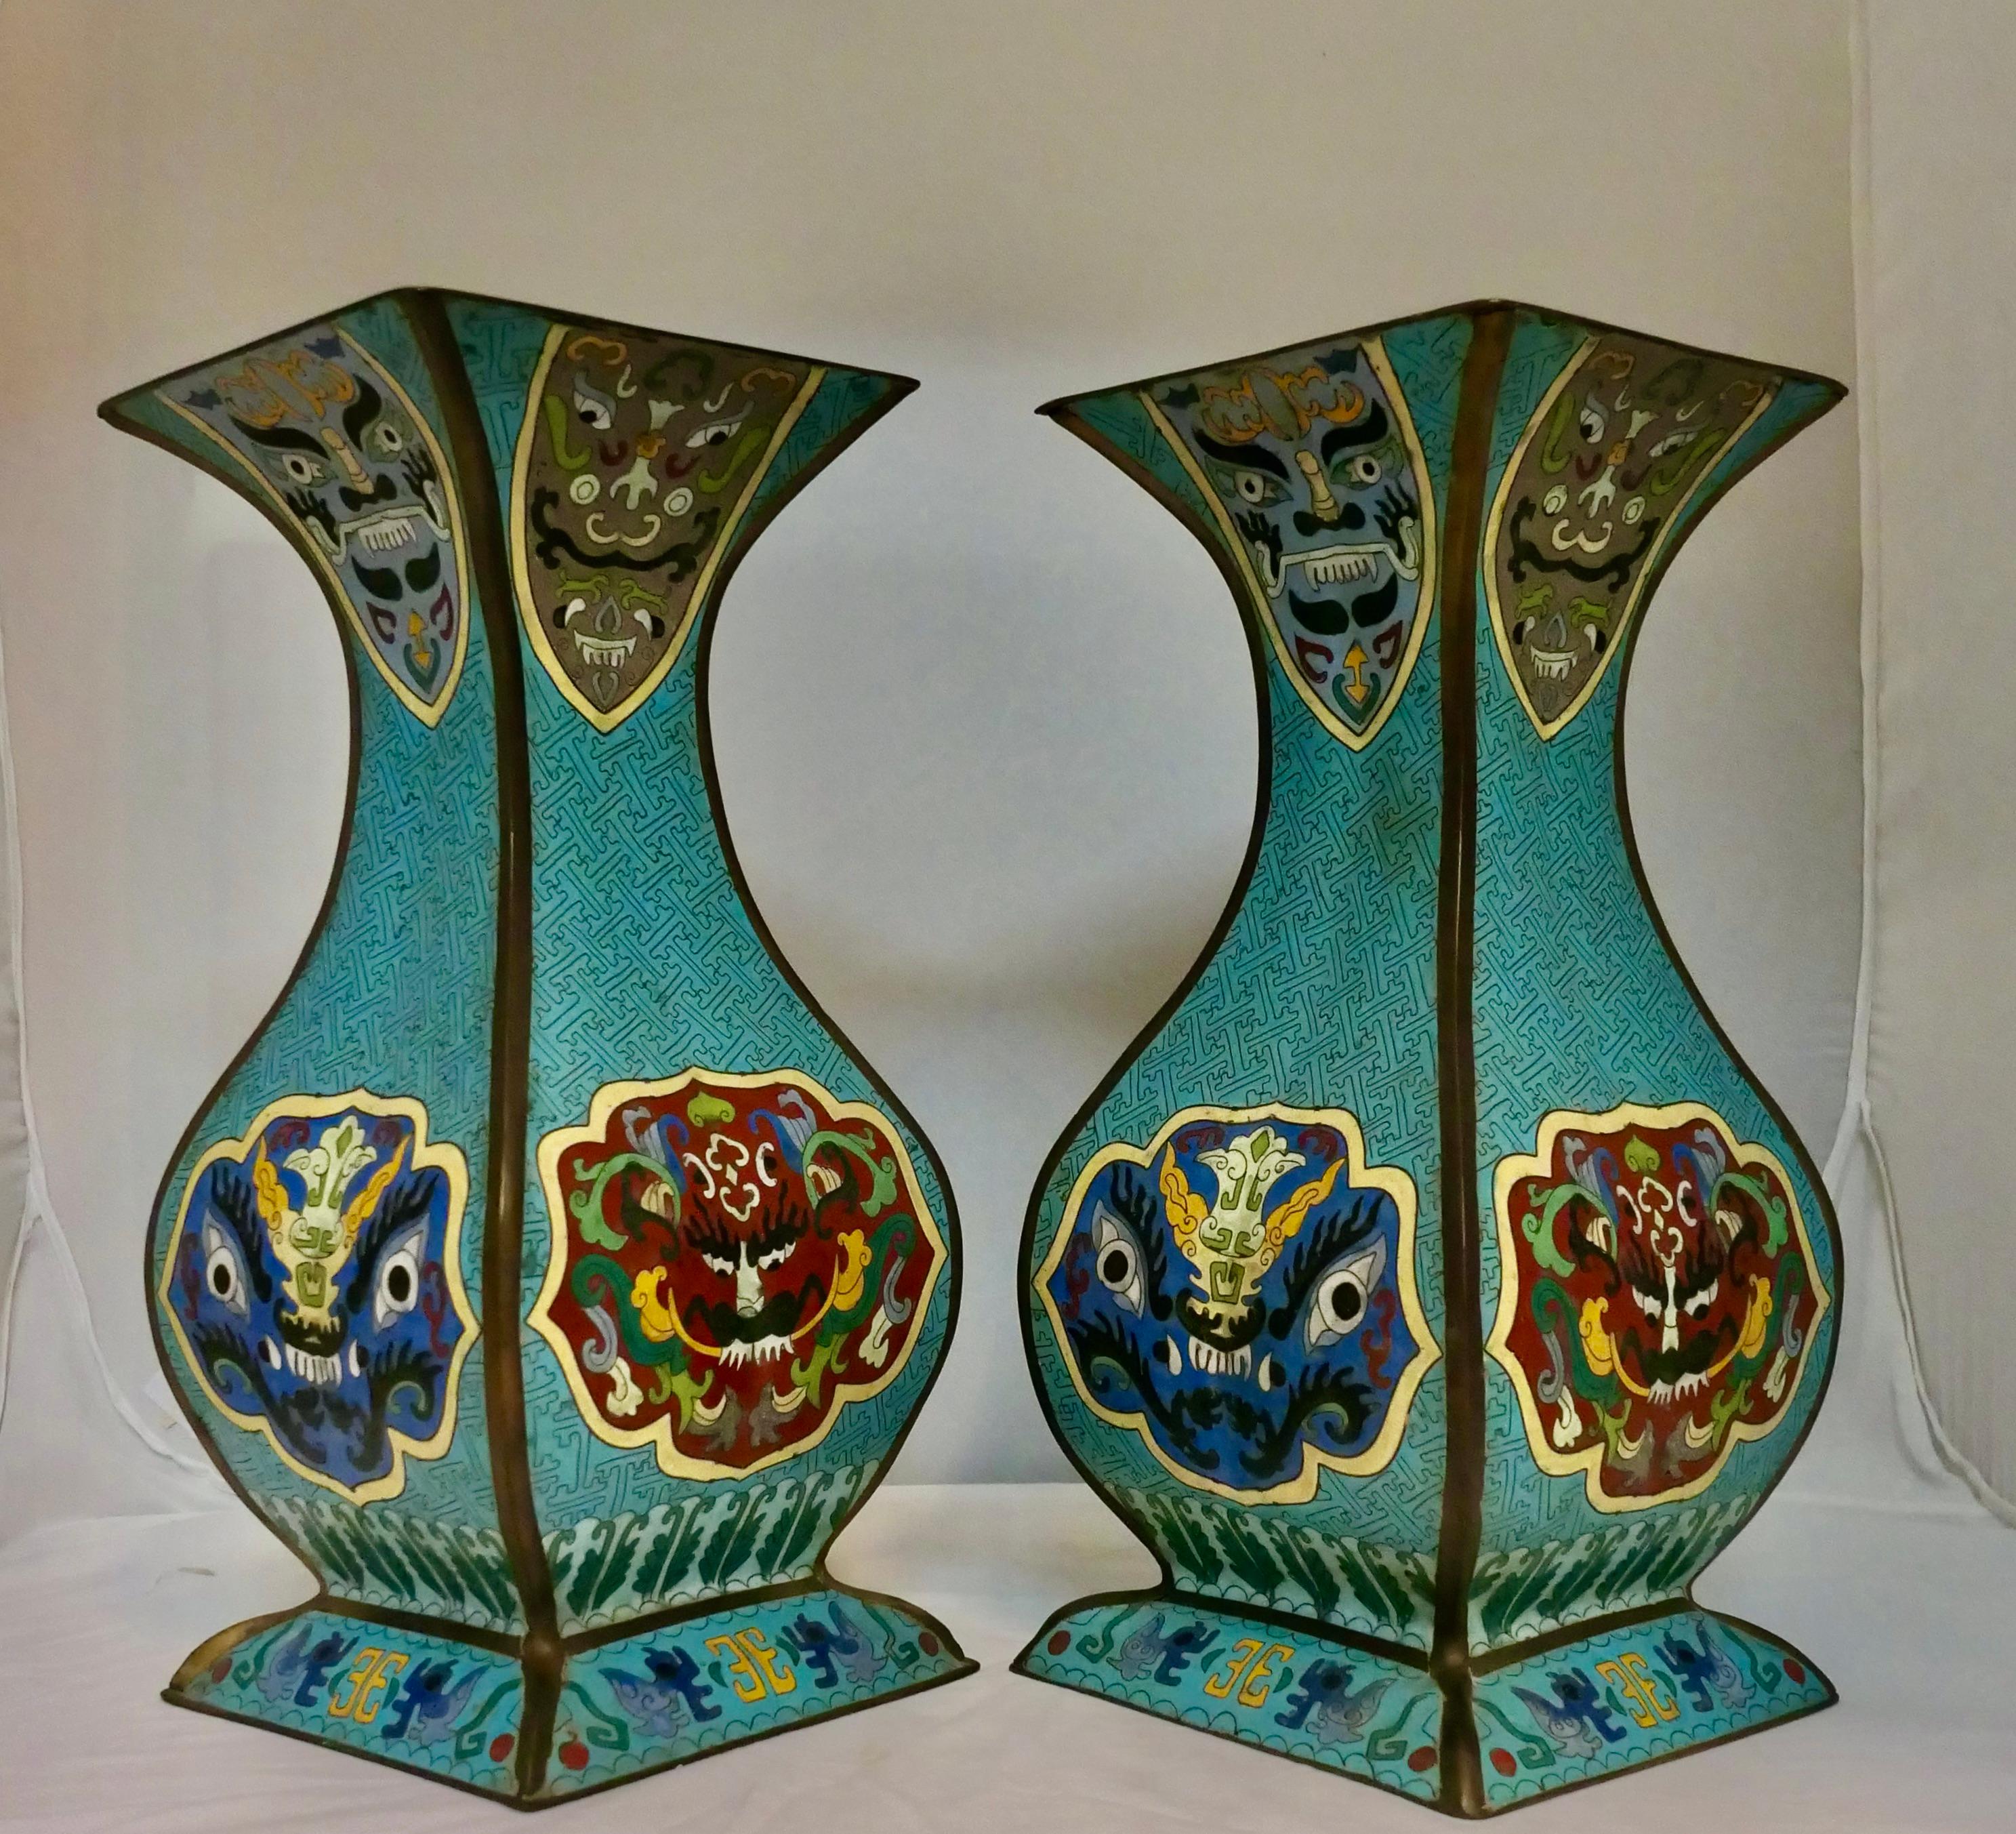 Cette paire de vases cloisonnés japonais du début du 20e siècle, décorés à la main, présente un design unique avec un corps incurvé à quatre panneaux, accentué par une base à jupe allongée. Chaque vase est décoré de superbes fonds bleus avec